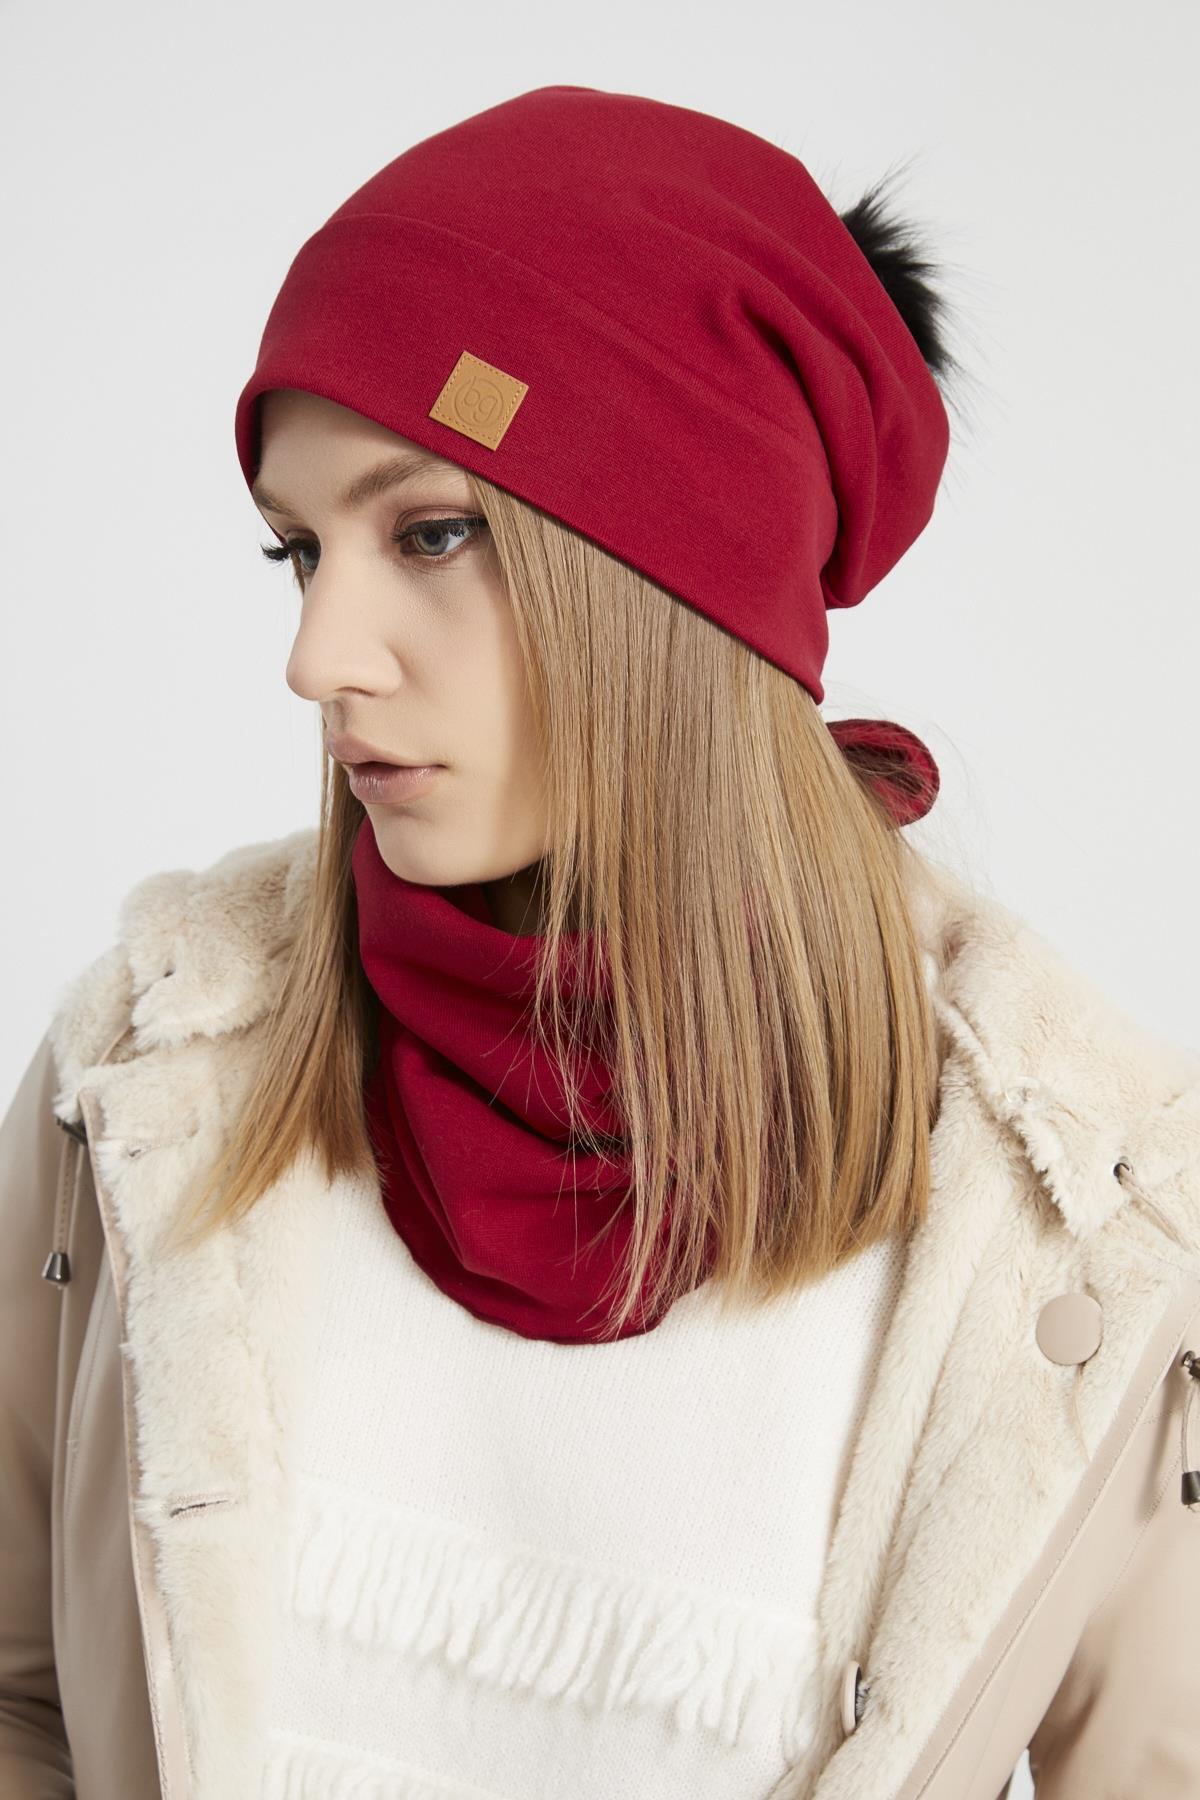 Kadın Genç Kız, trend kırmızı kürk ponponlu Şapka Bere boyunluk Takım  -Spor, Rahat, pamuklu, TERMAL